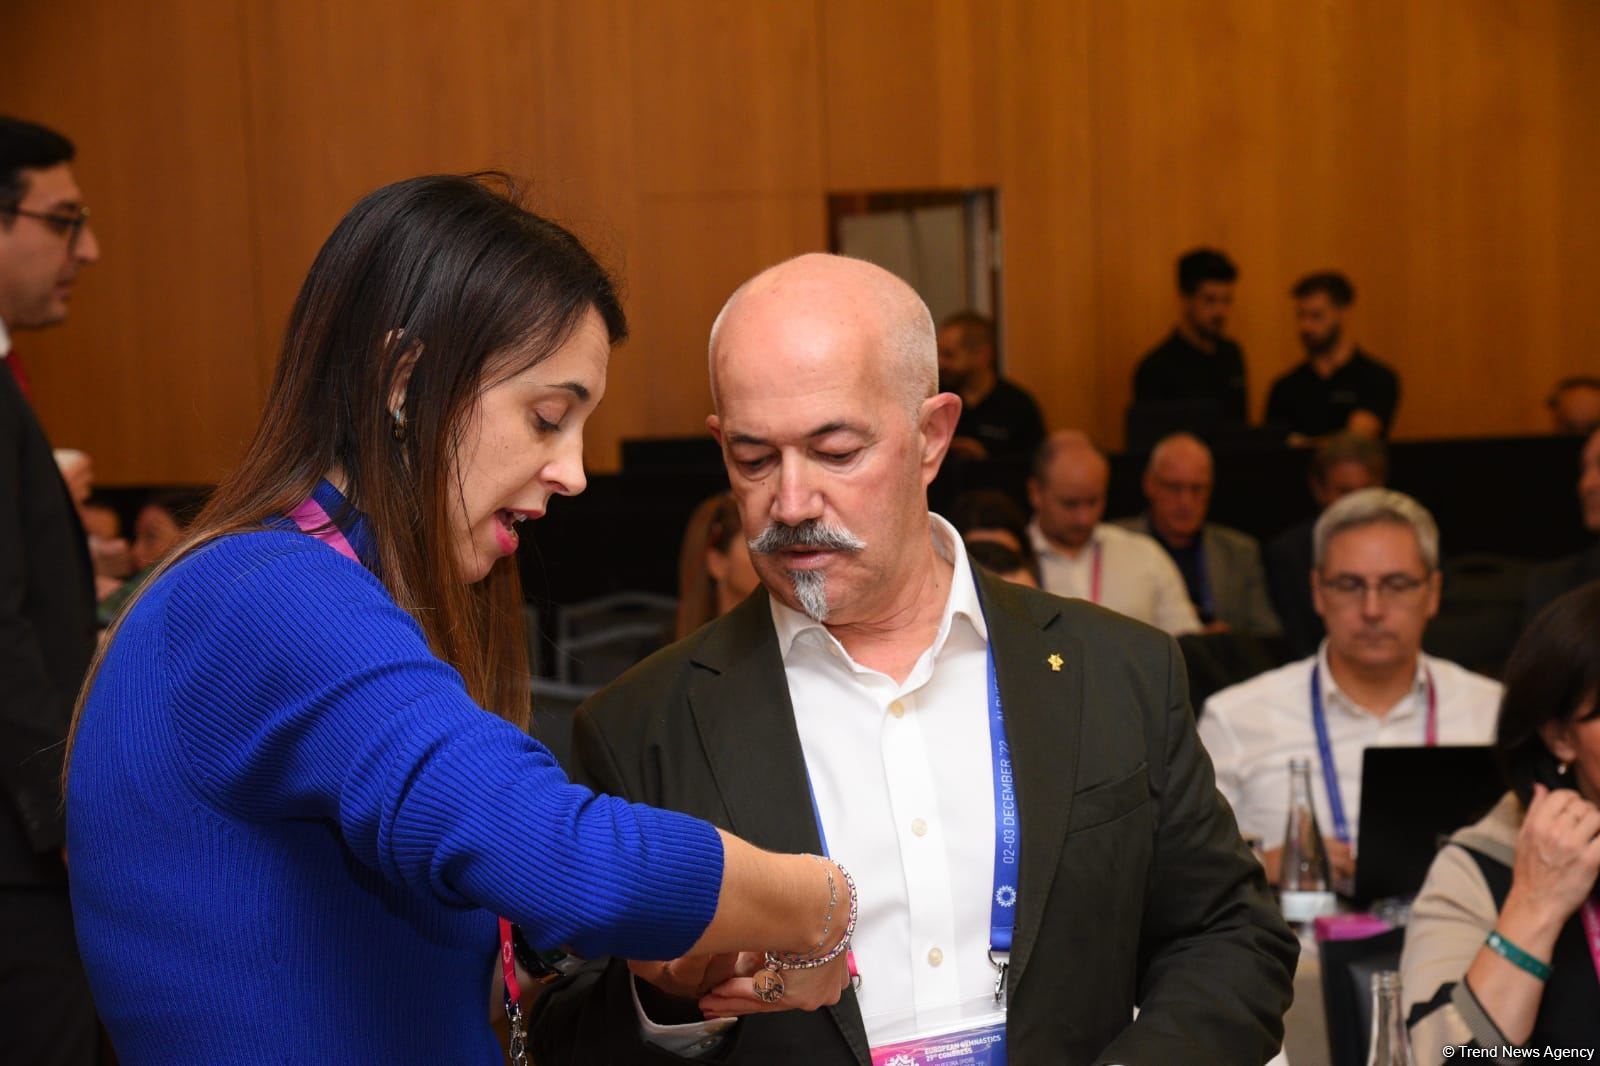 Azerbaijani minister re-elected president of European Gymnastics (PHOTO)